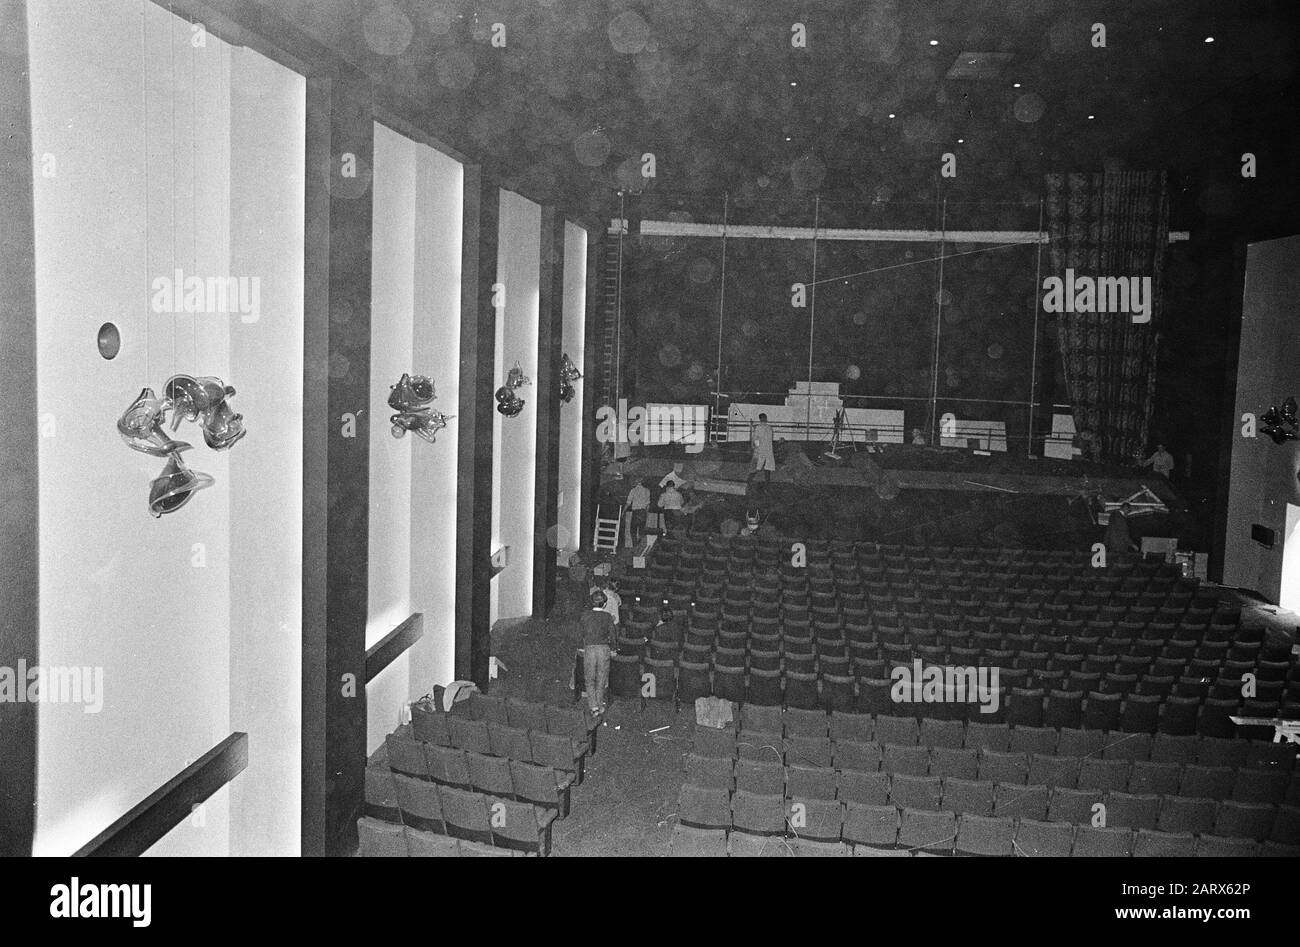 Abschluss des Baus des neuen Rembrandt-Theaters, vermutlich in Amsterdam Theaterzaal Datum: 29. august 1966 Standort: Amsterdam, Noord-Holland Schlüsselwörter: Theater Stockfoto